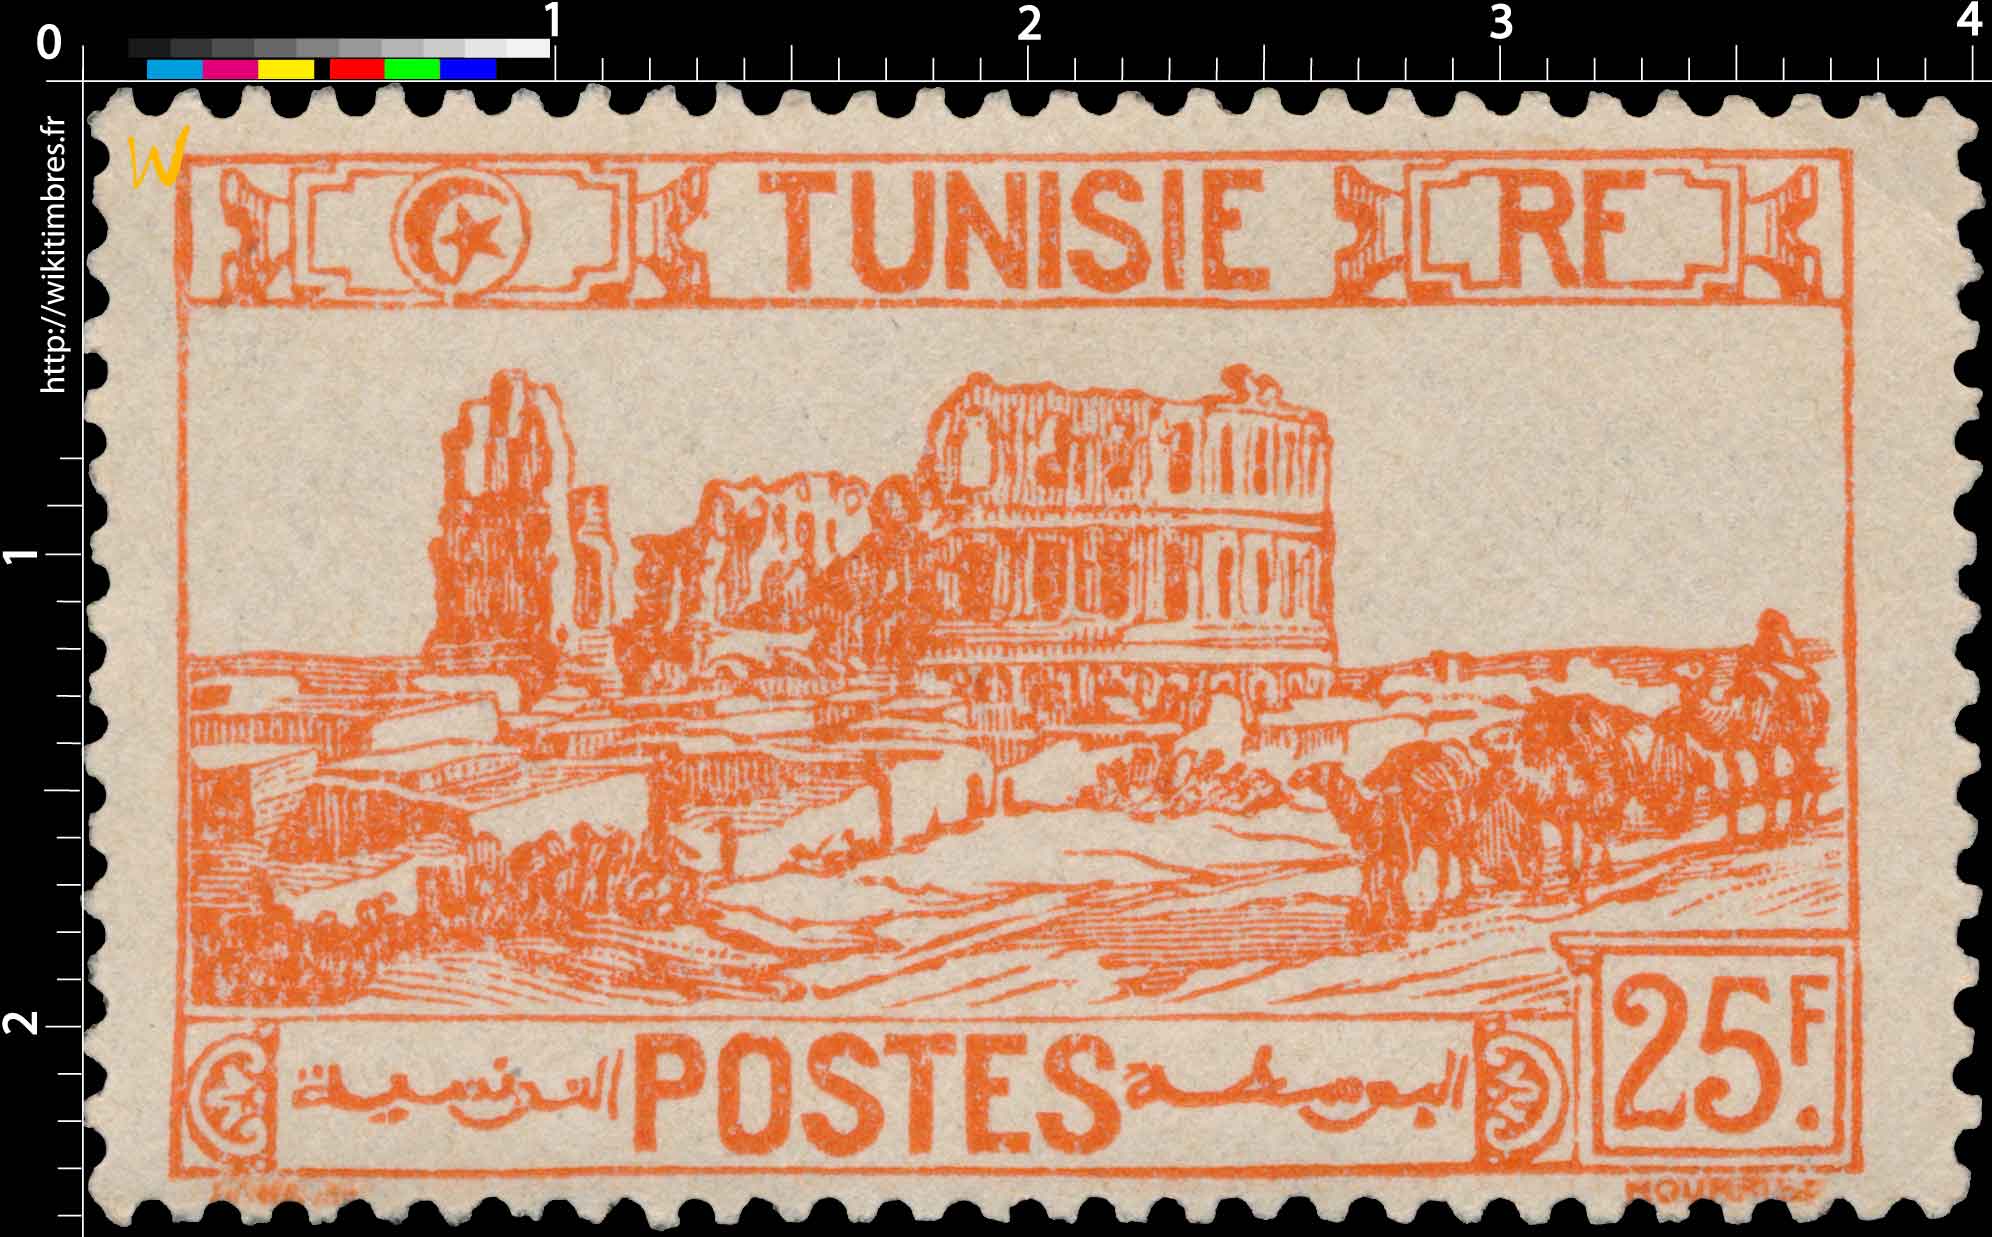 Tunisie - type amphithéâtre d'El Djem